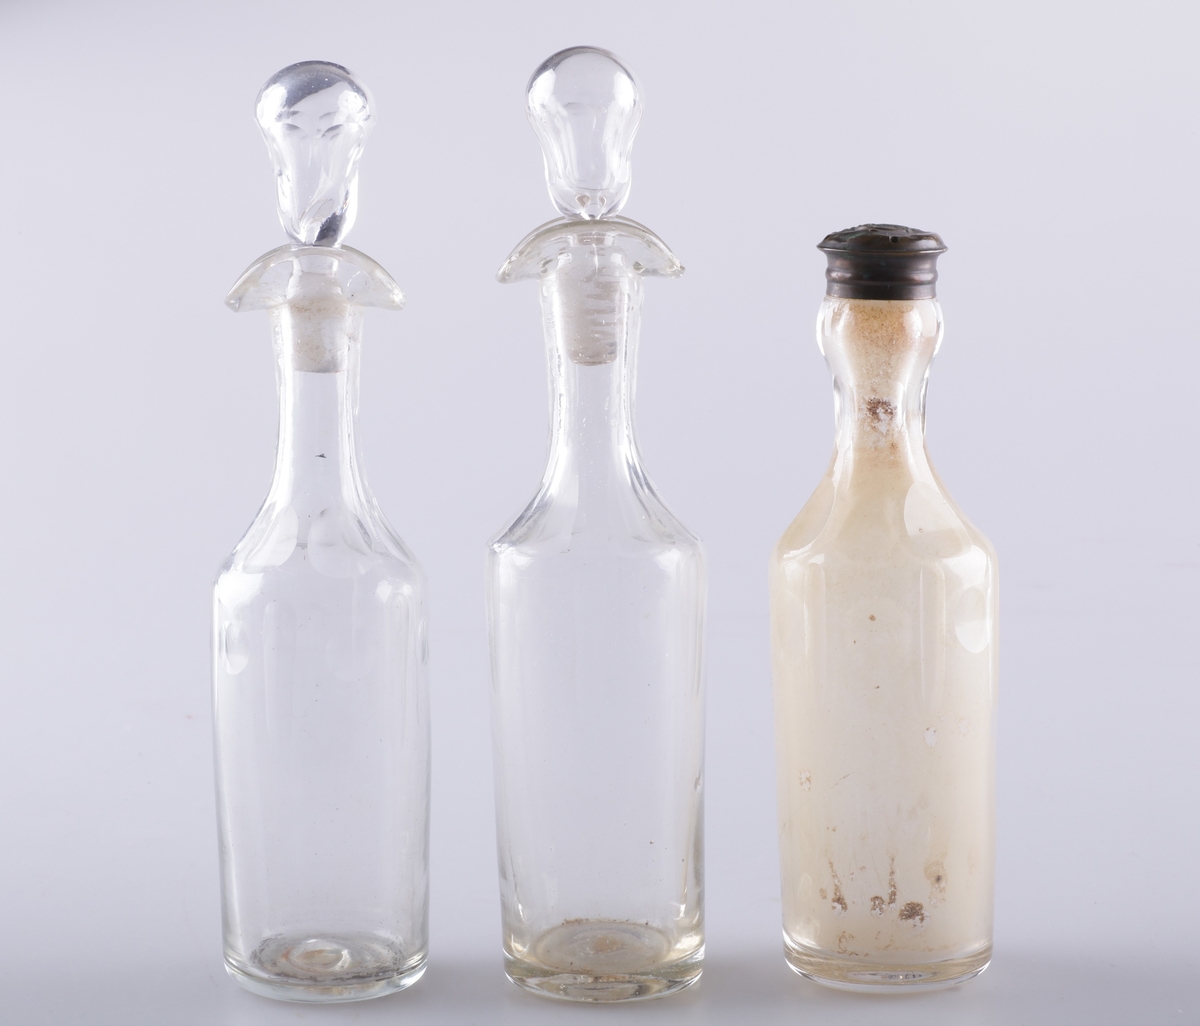 Flasken er slank med dobbel helletut og glasspropp. Den er dekorert med fassettsliping og olivensliping i annethvert felt øverst på kroppen.